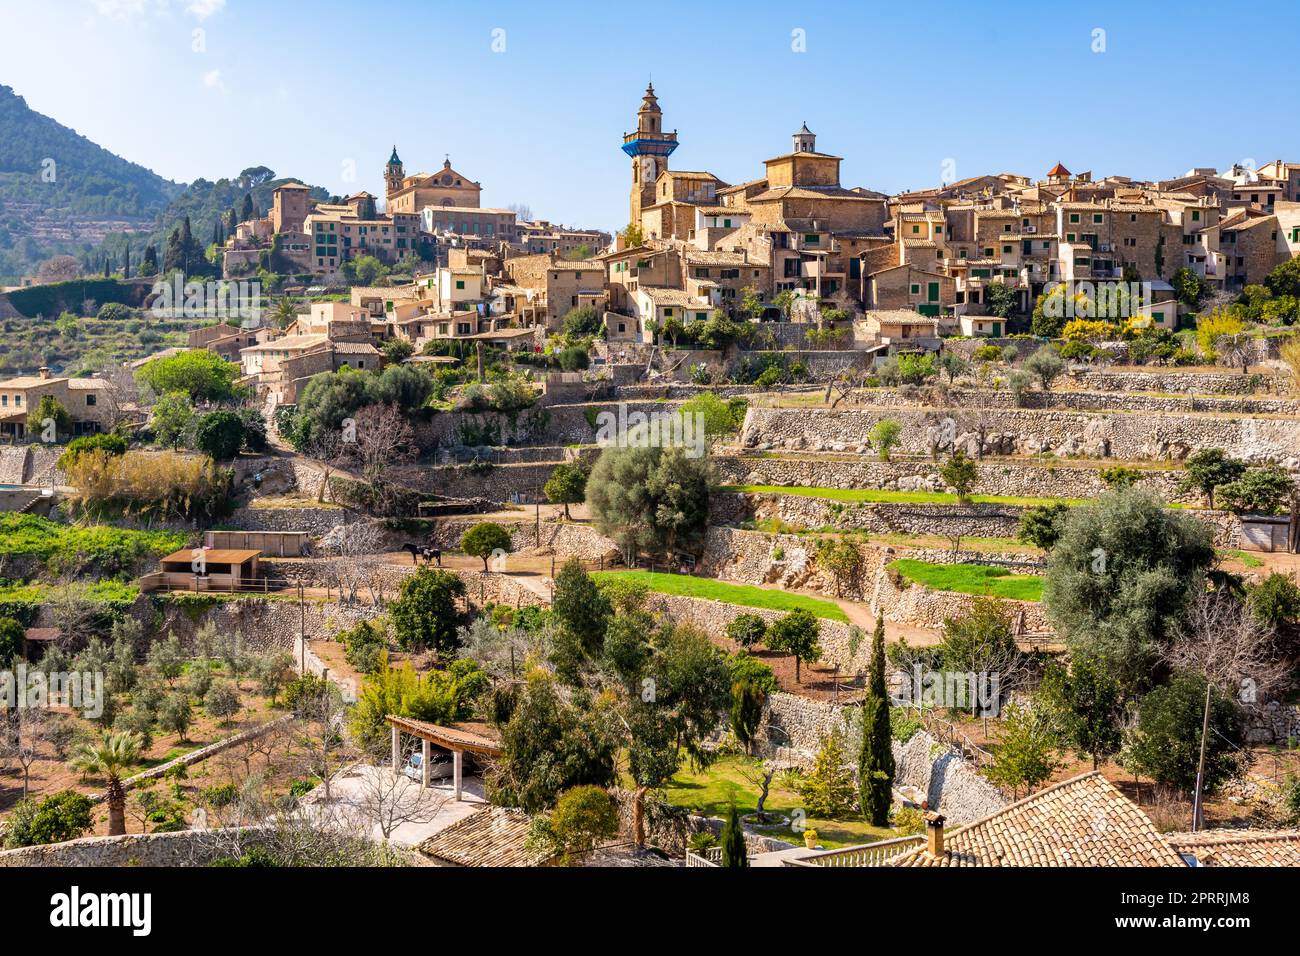 Bella vista delle scale e degli edifici a Valldemossa, Maiorca Spagna in una giornata di sole Foto Stock